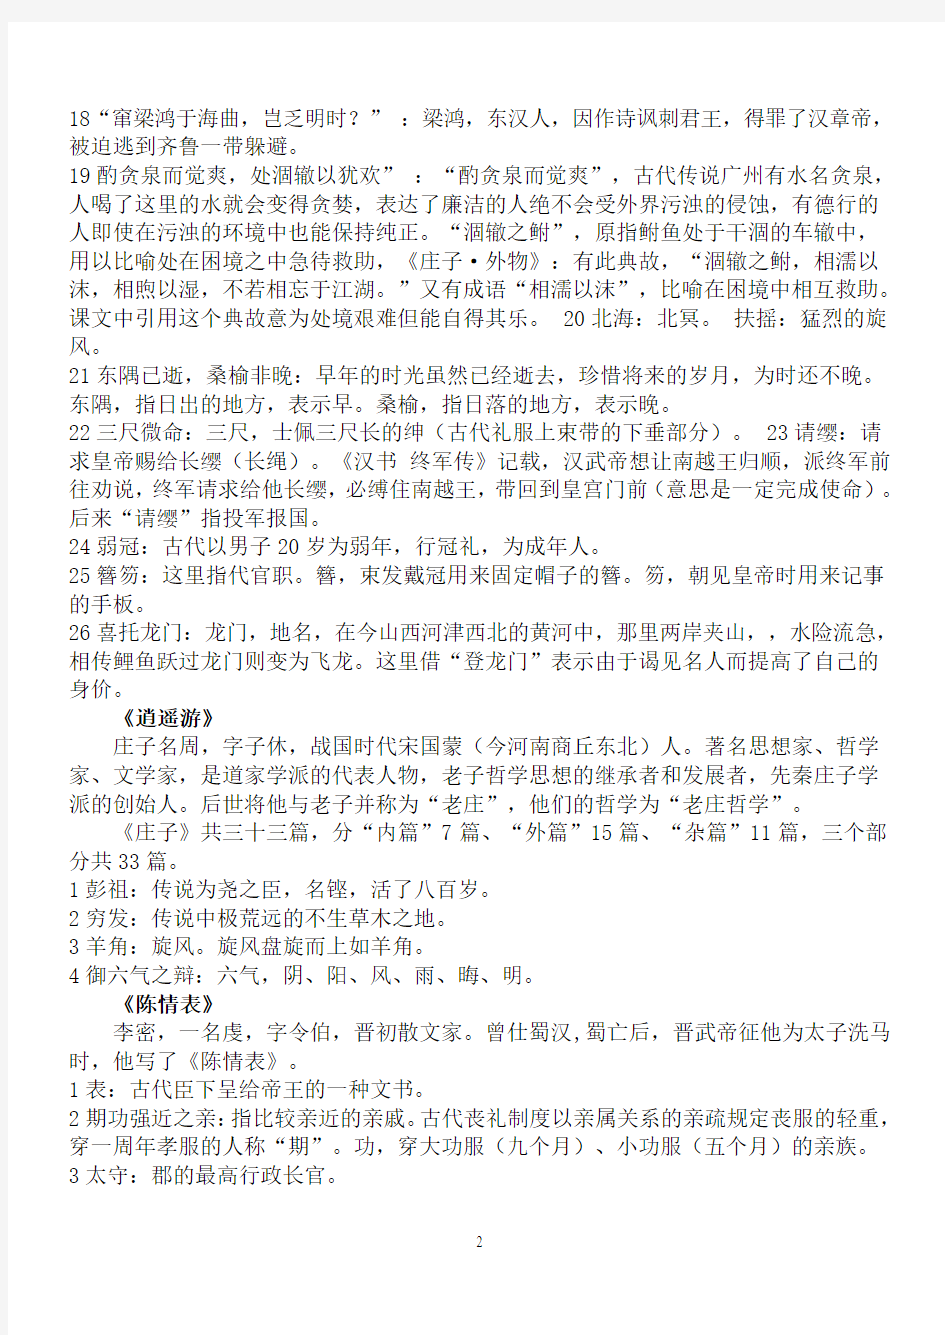 必修5中国古代诗歌散文选修文化常识总结